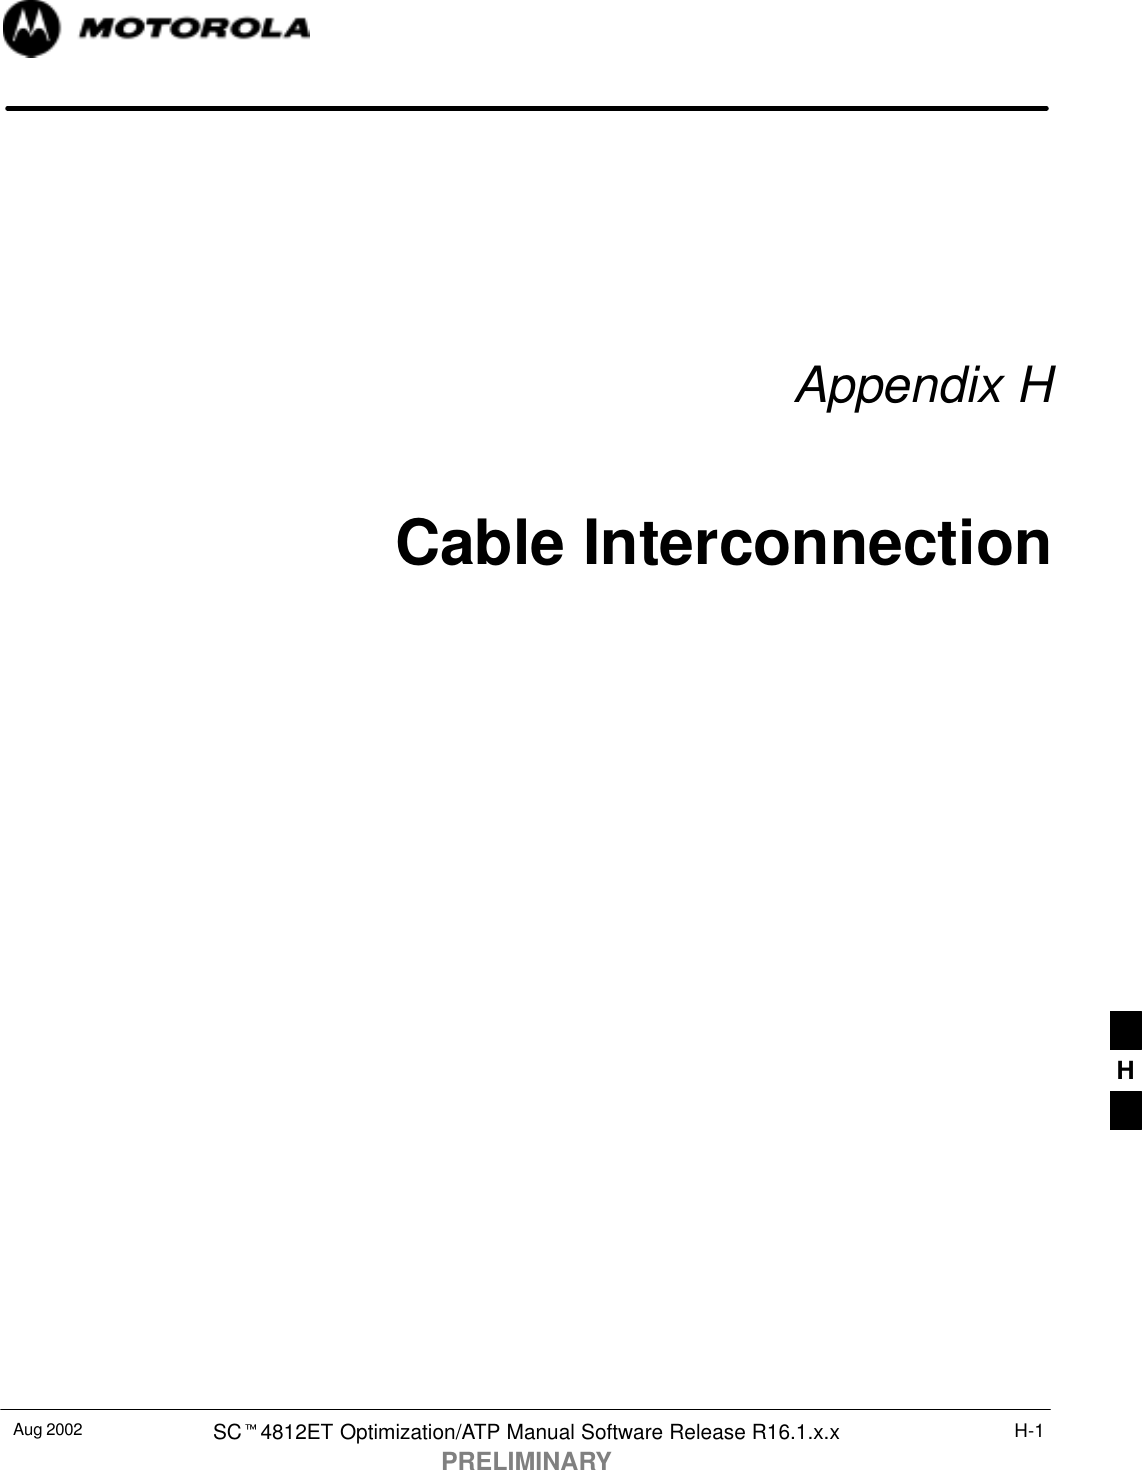 Aug 2002 SCt4812ET Optimization/ATP Manual Software Release R16.1.x.xPRELIMINARYH-1Appendix HCable InterconnectionH